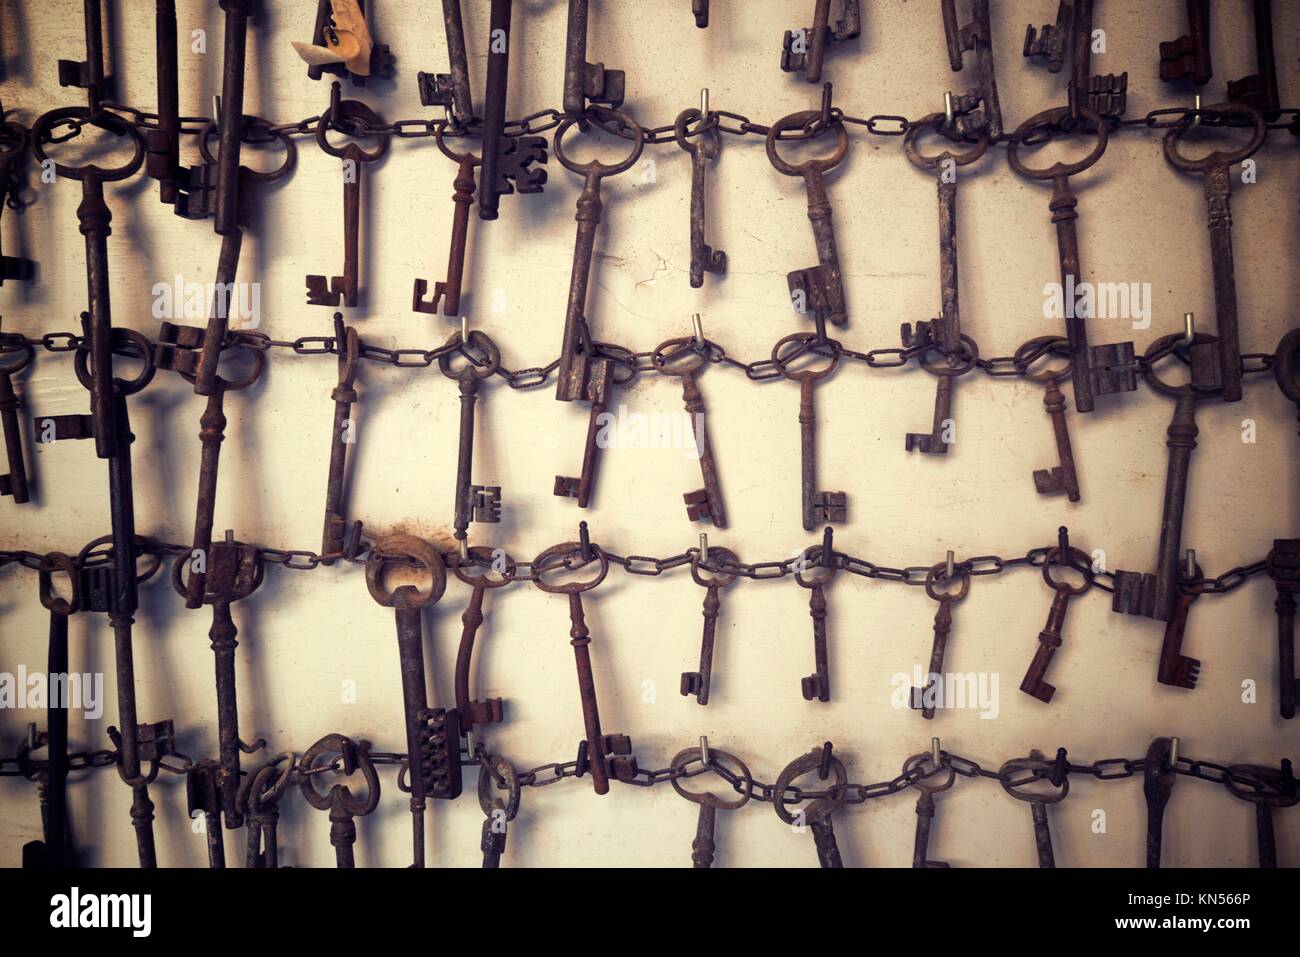 Gruppe der alten Schlüssel an eine Wand hängen Stockfotografie - Alamy